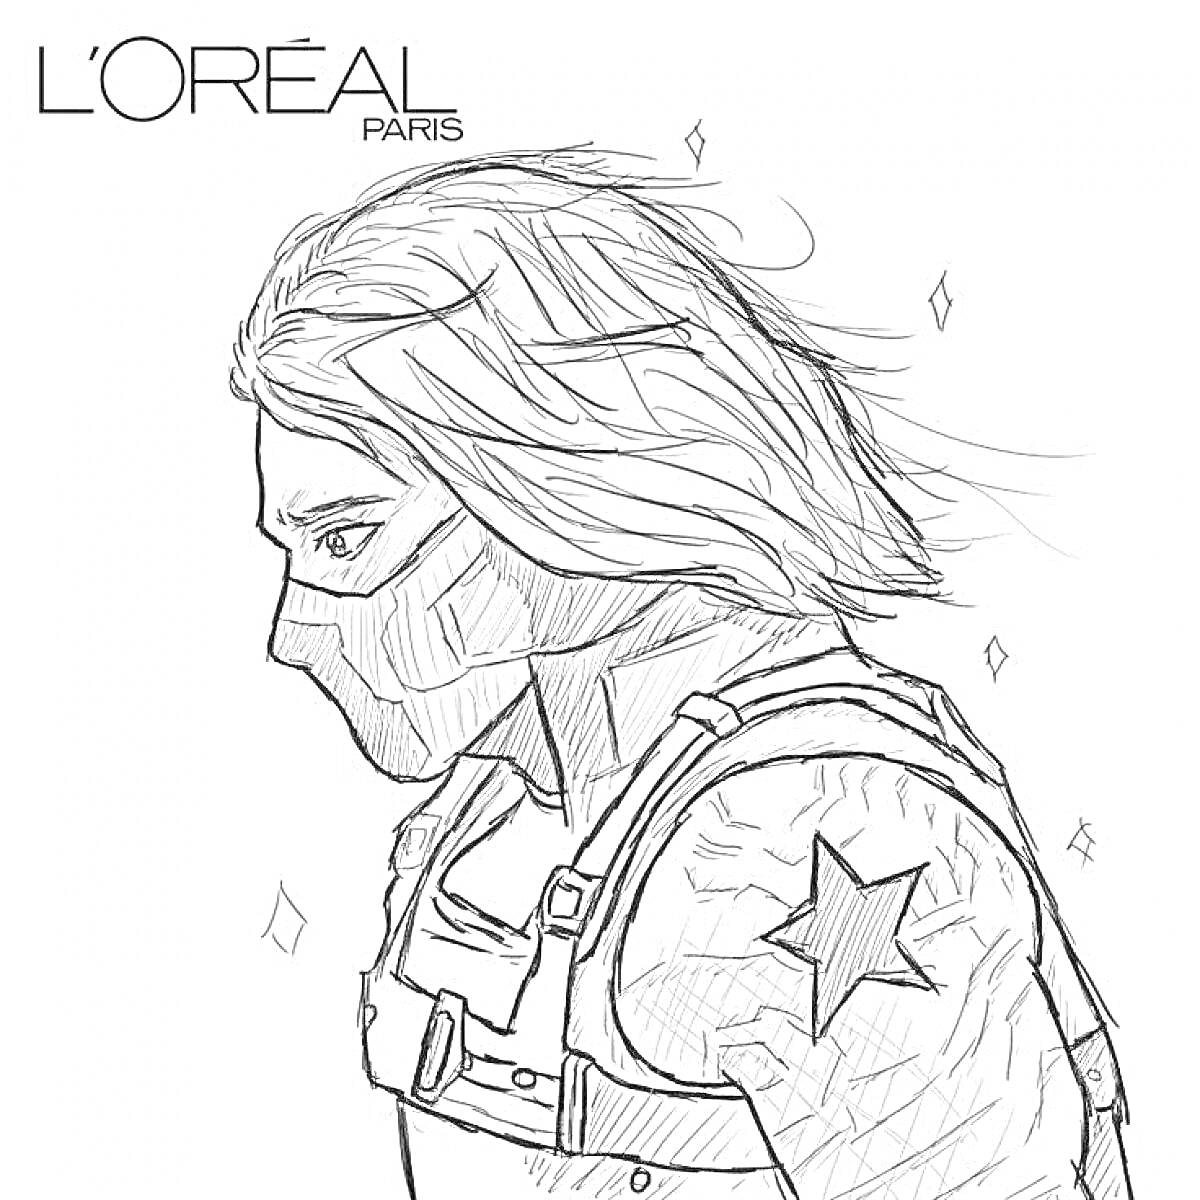 Раскраска Портрет персонажа с длинными волосами и маской, звездой на плече и ремнями, логотип L'Oréal Paris в углу